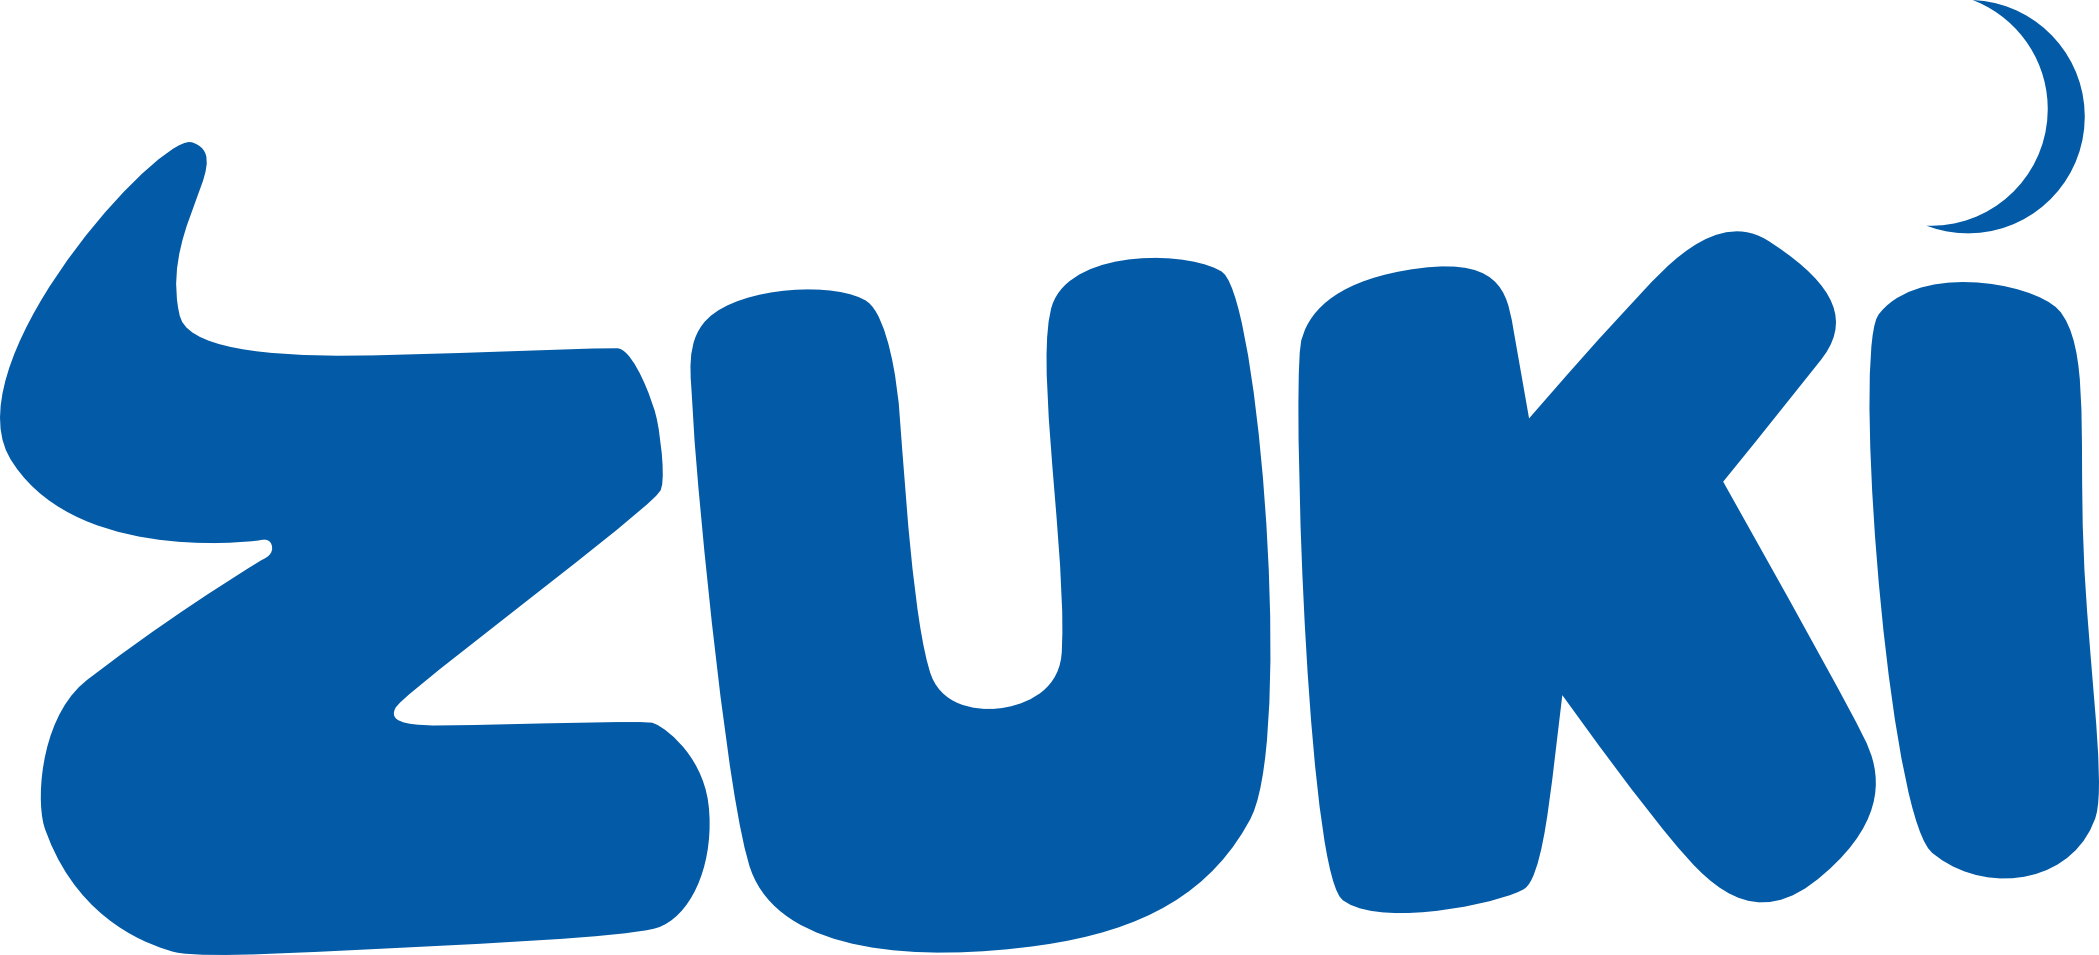 Zuki Moon Logo LARGE.png